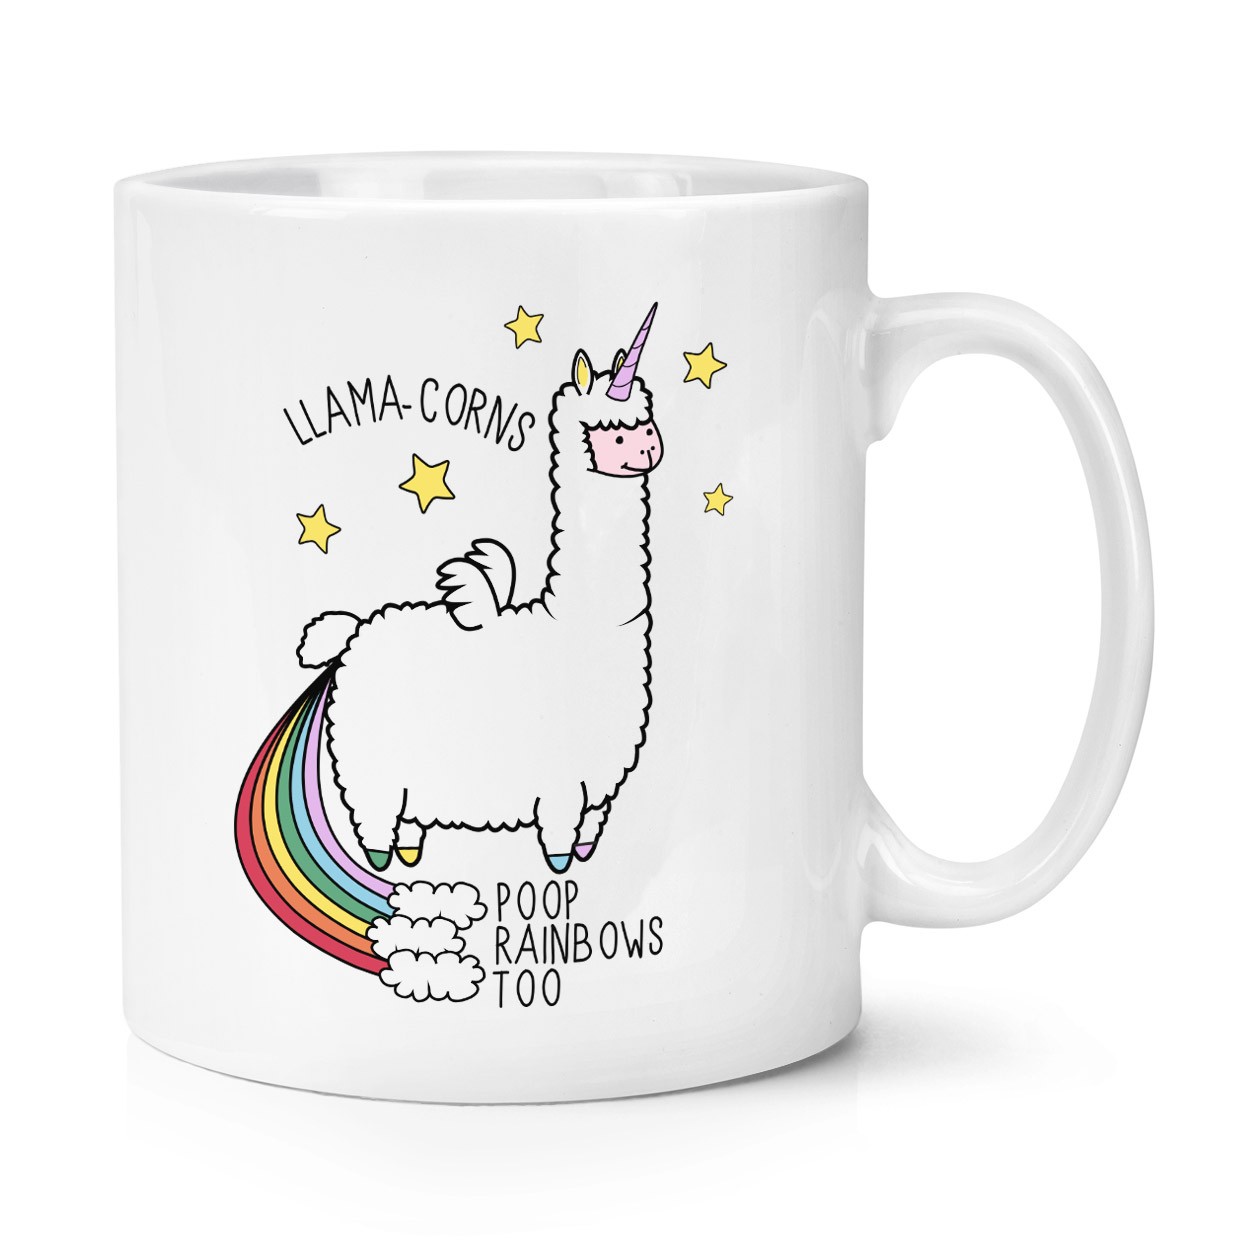 Llama-corns Poop Rainbows Too 10oz Mug Cup 